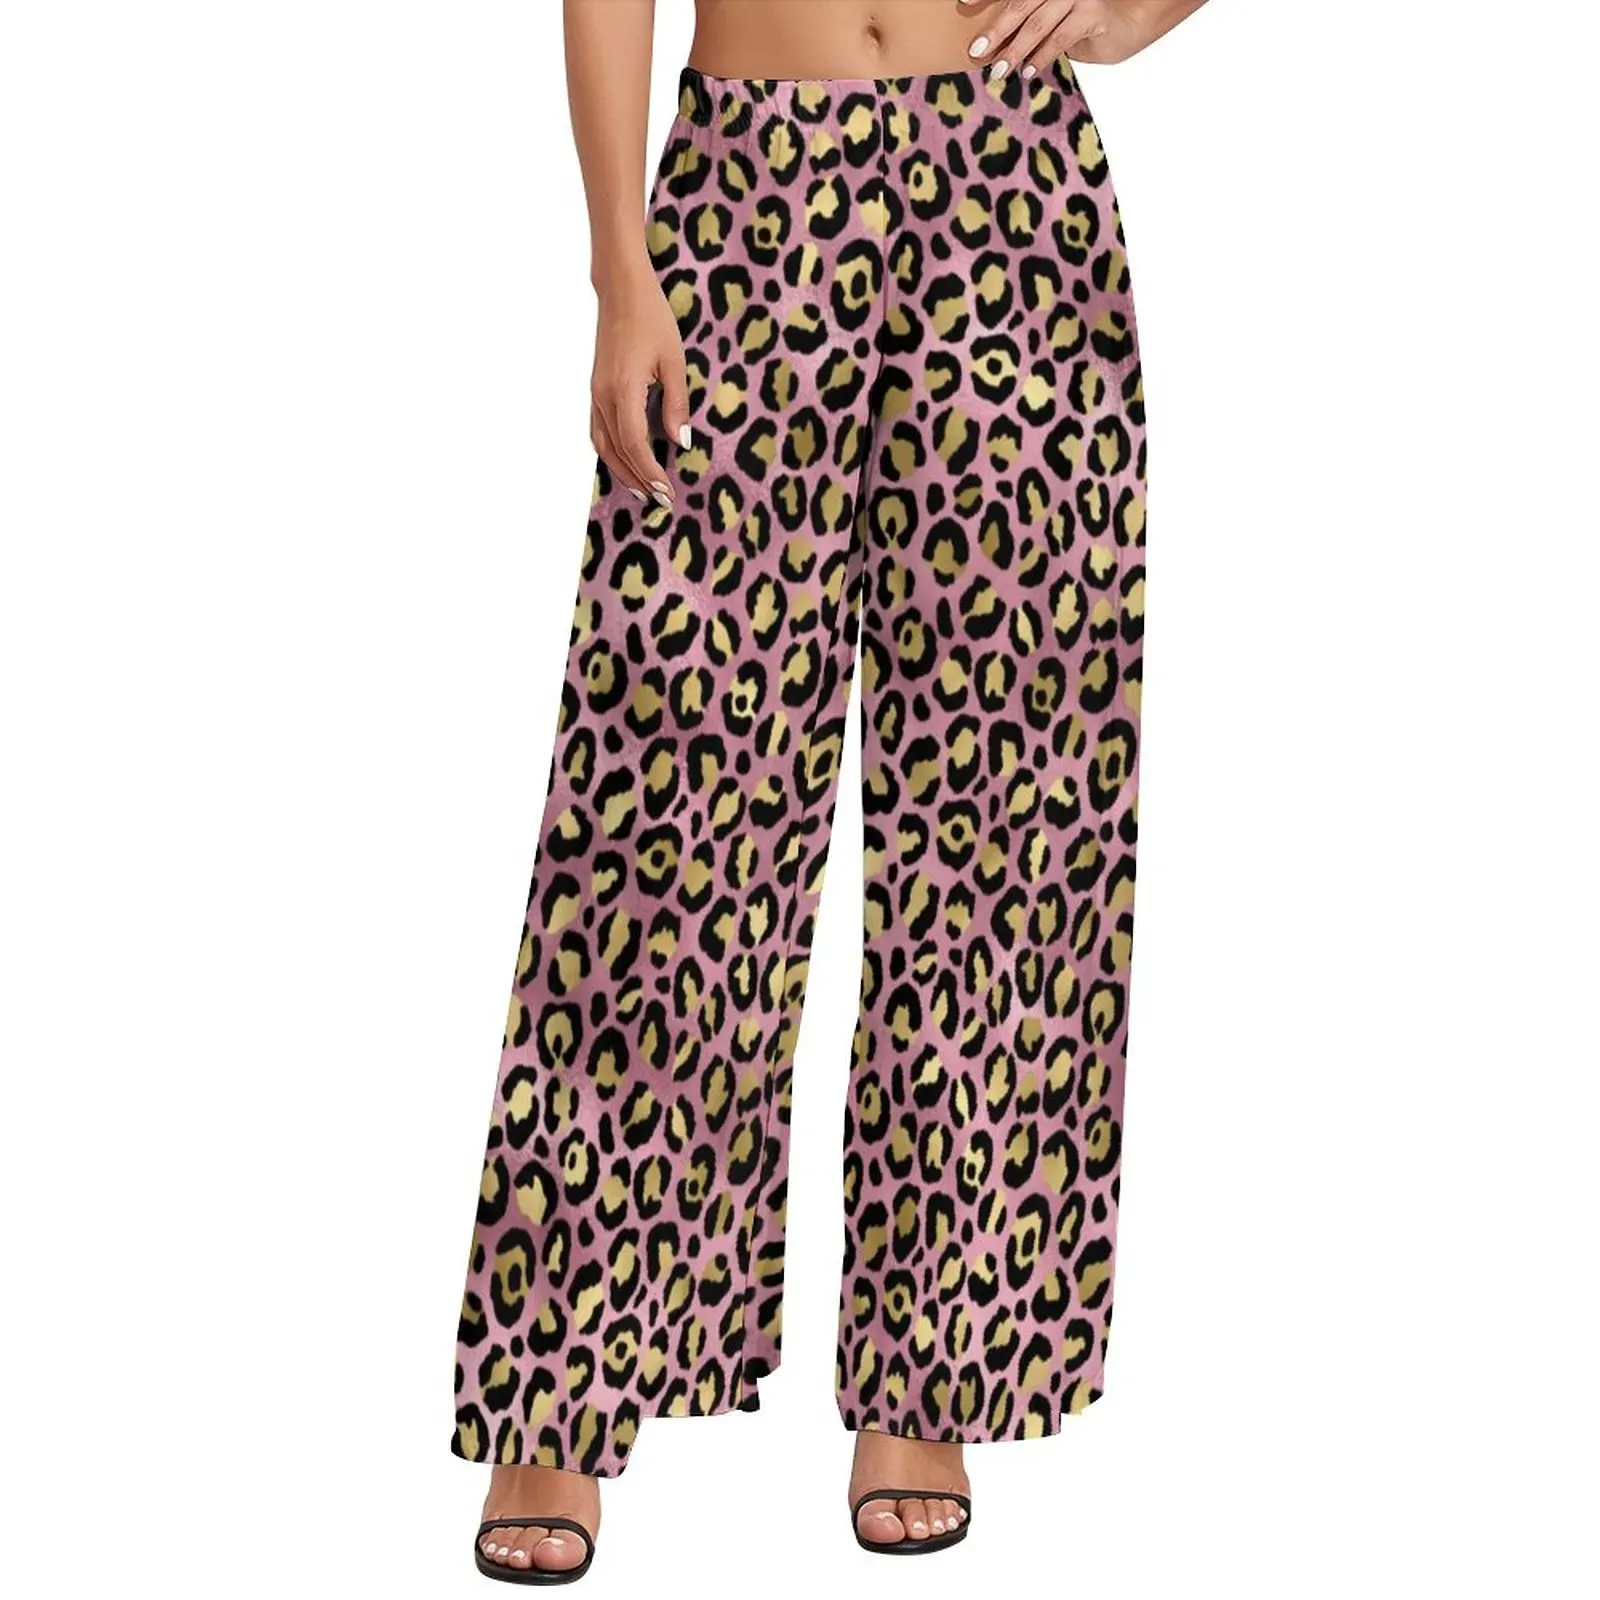 

Женские брюки с леопардовым принтом, розовые и золотистые офисные широкие брюки большого размера с животным принтом, прямые брюки в уличном...